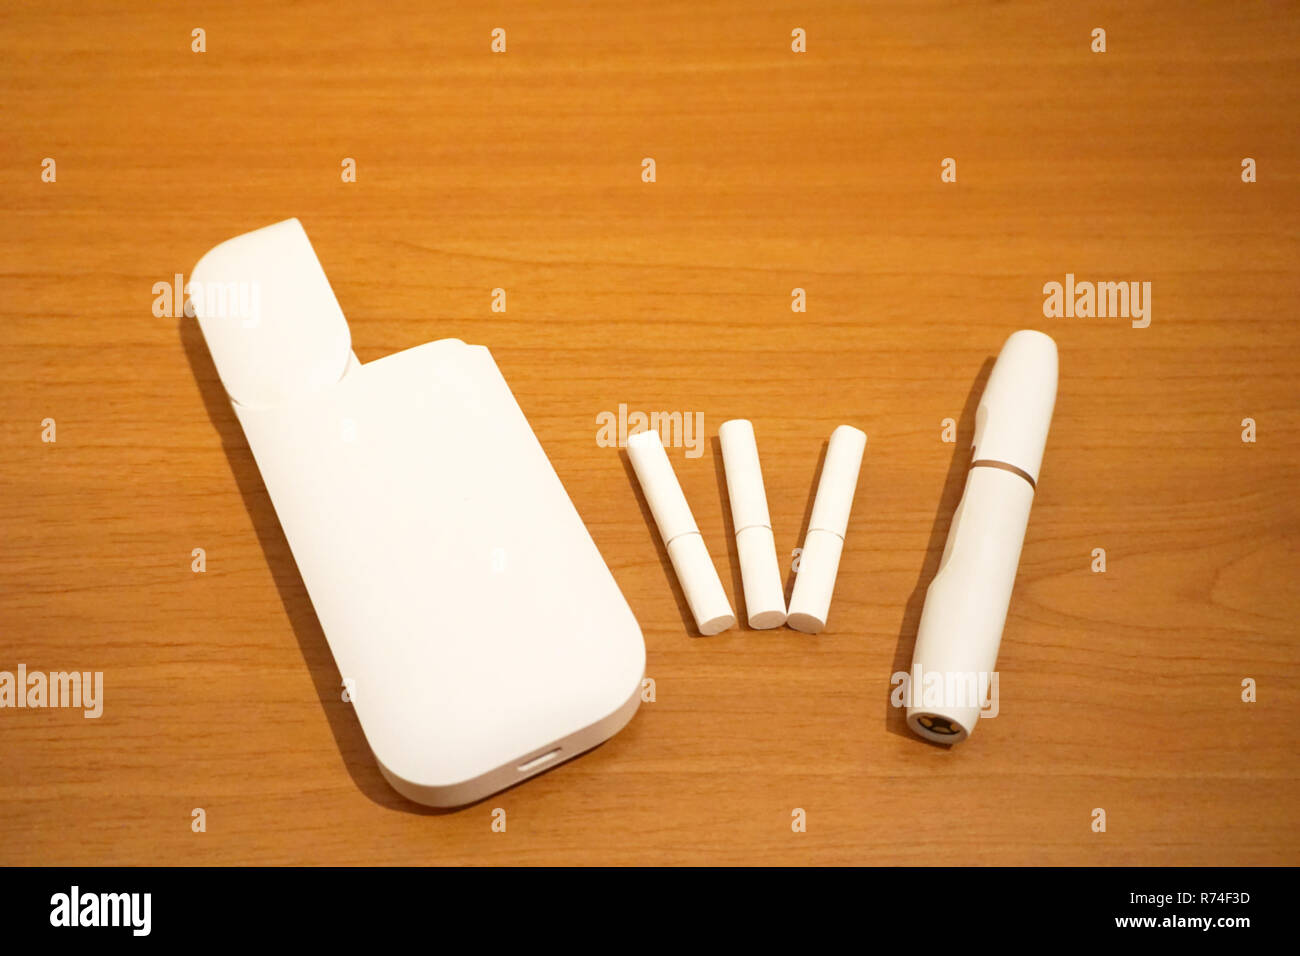 Sigarette realizzata con una nuova tecnologia alternativa per fumatori, elettronici accessori senza fumo Foto Stock